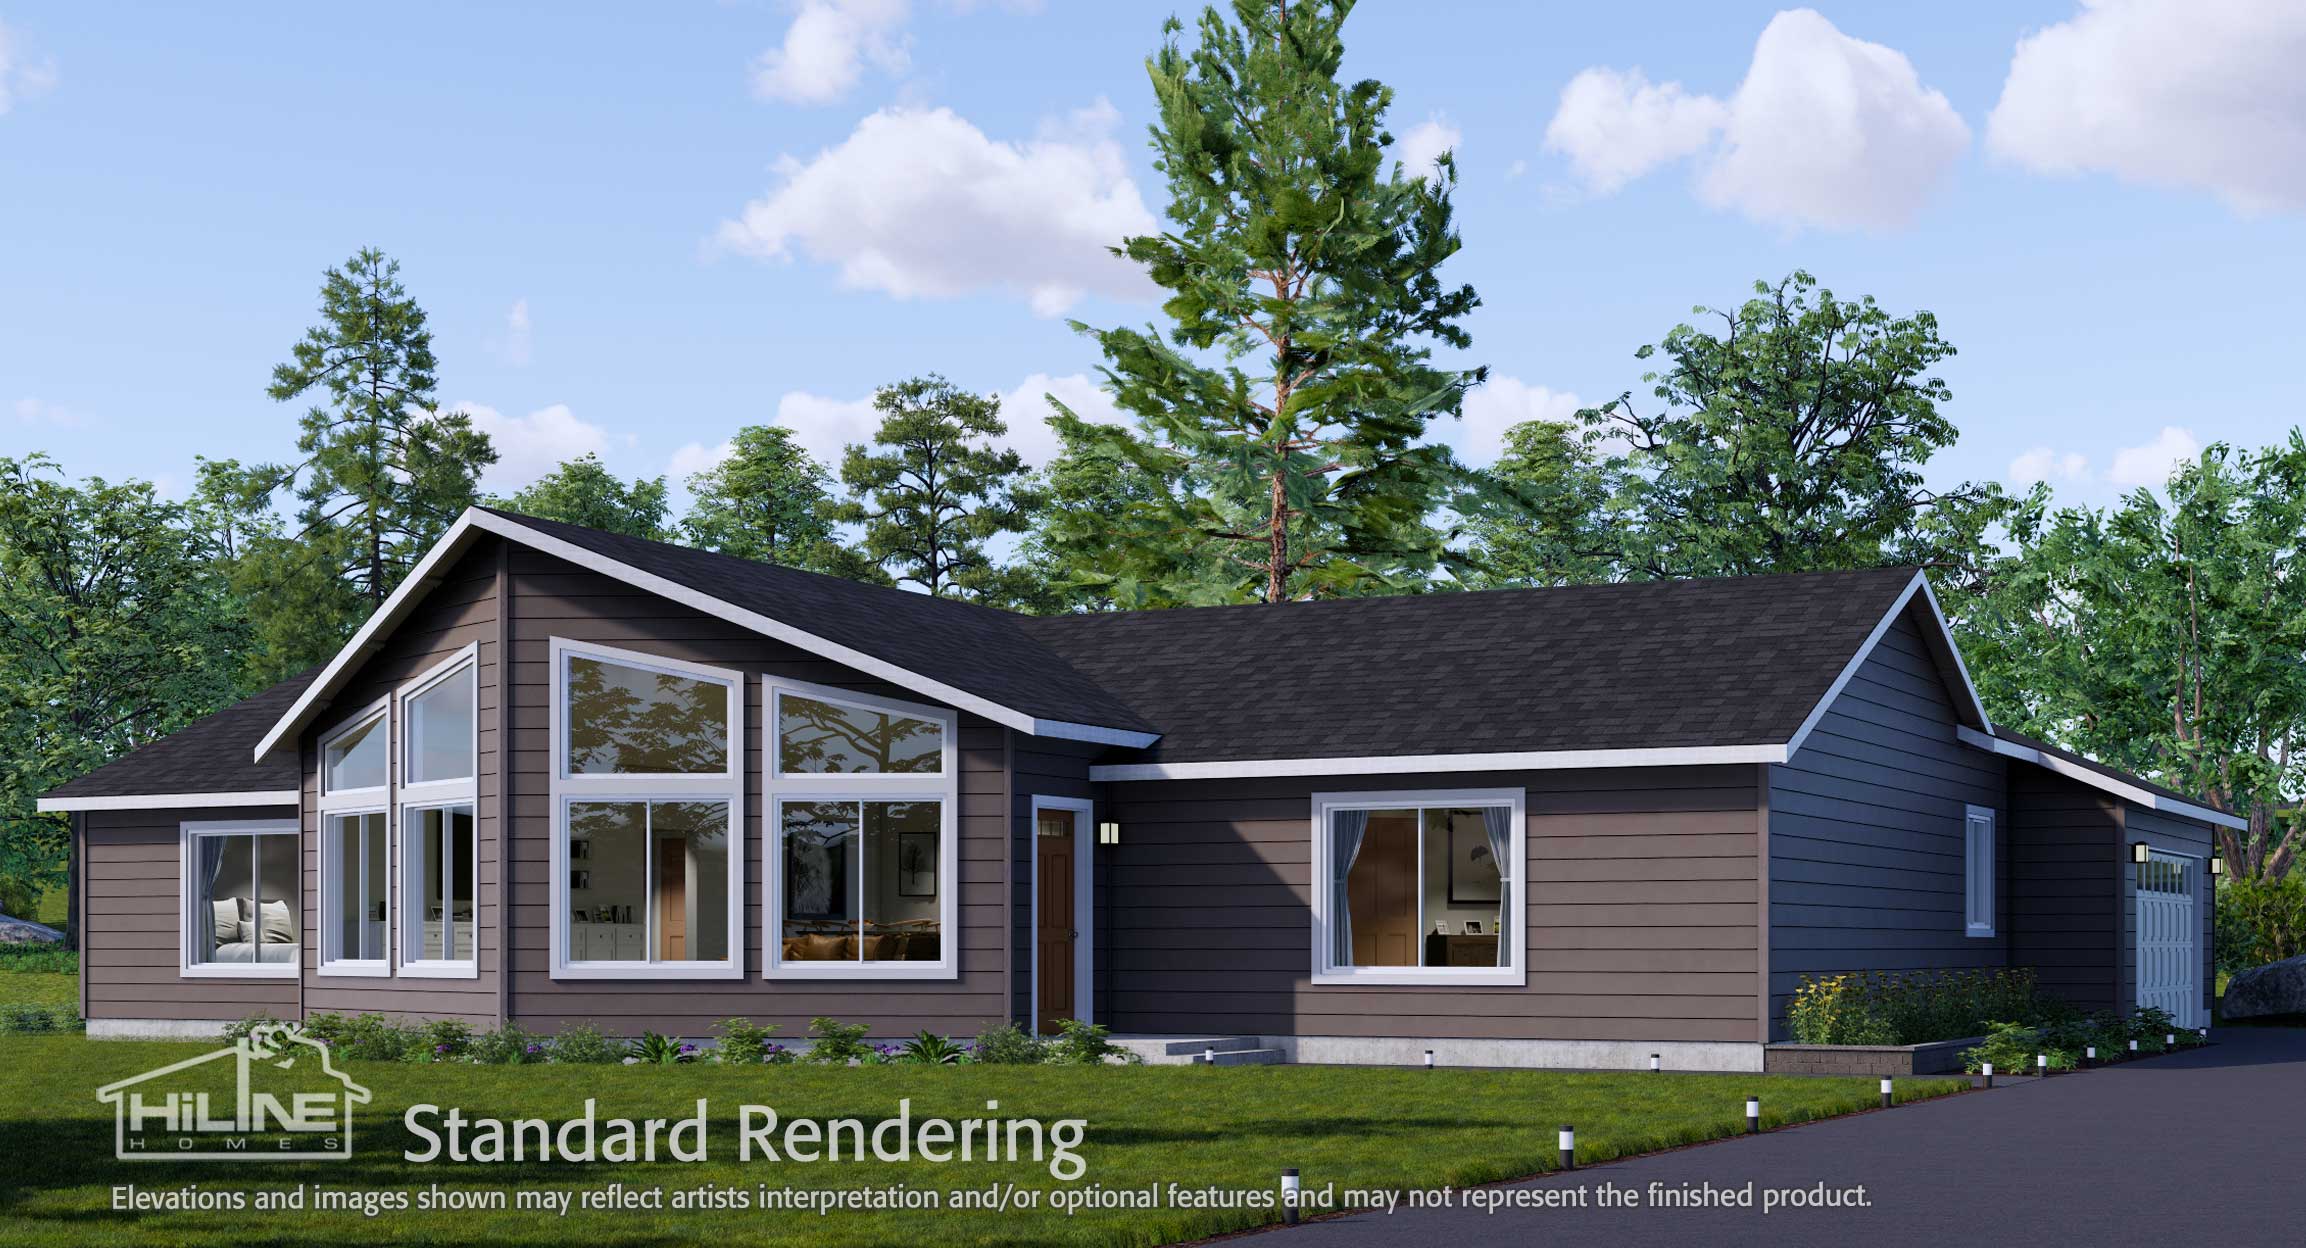 Image of Home Plan 2041 Standard Rendering.